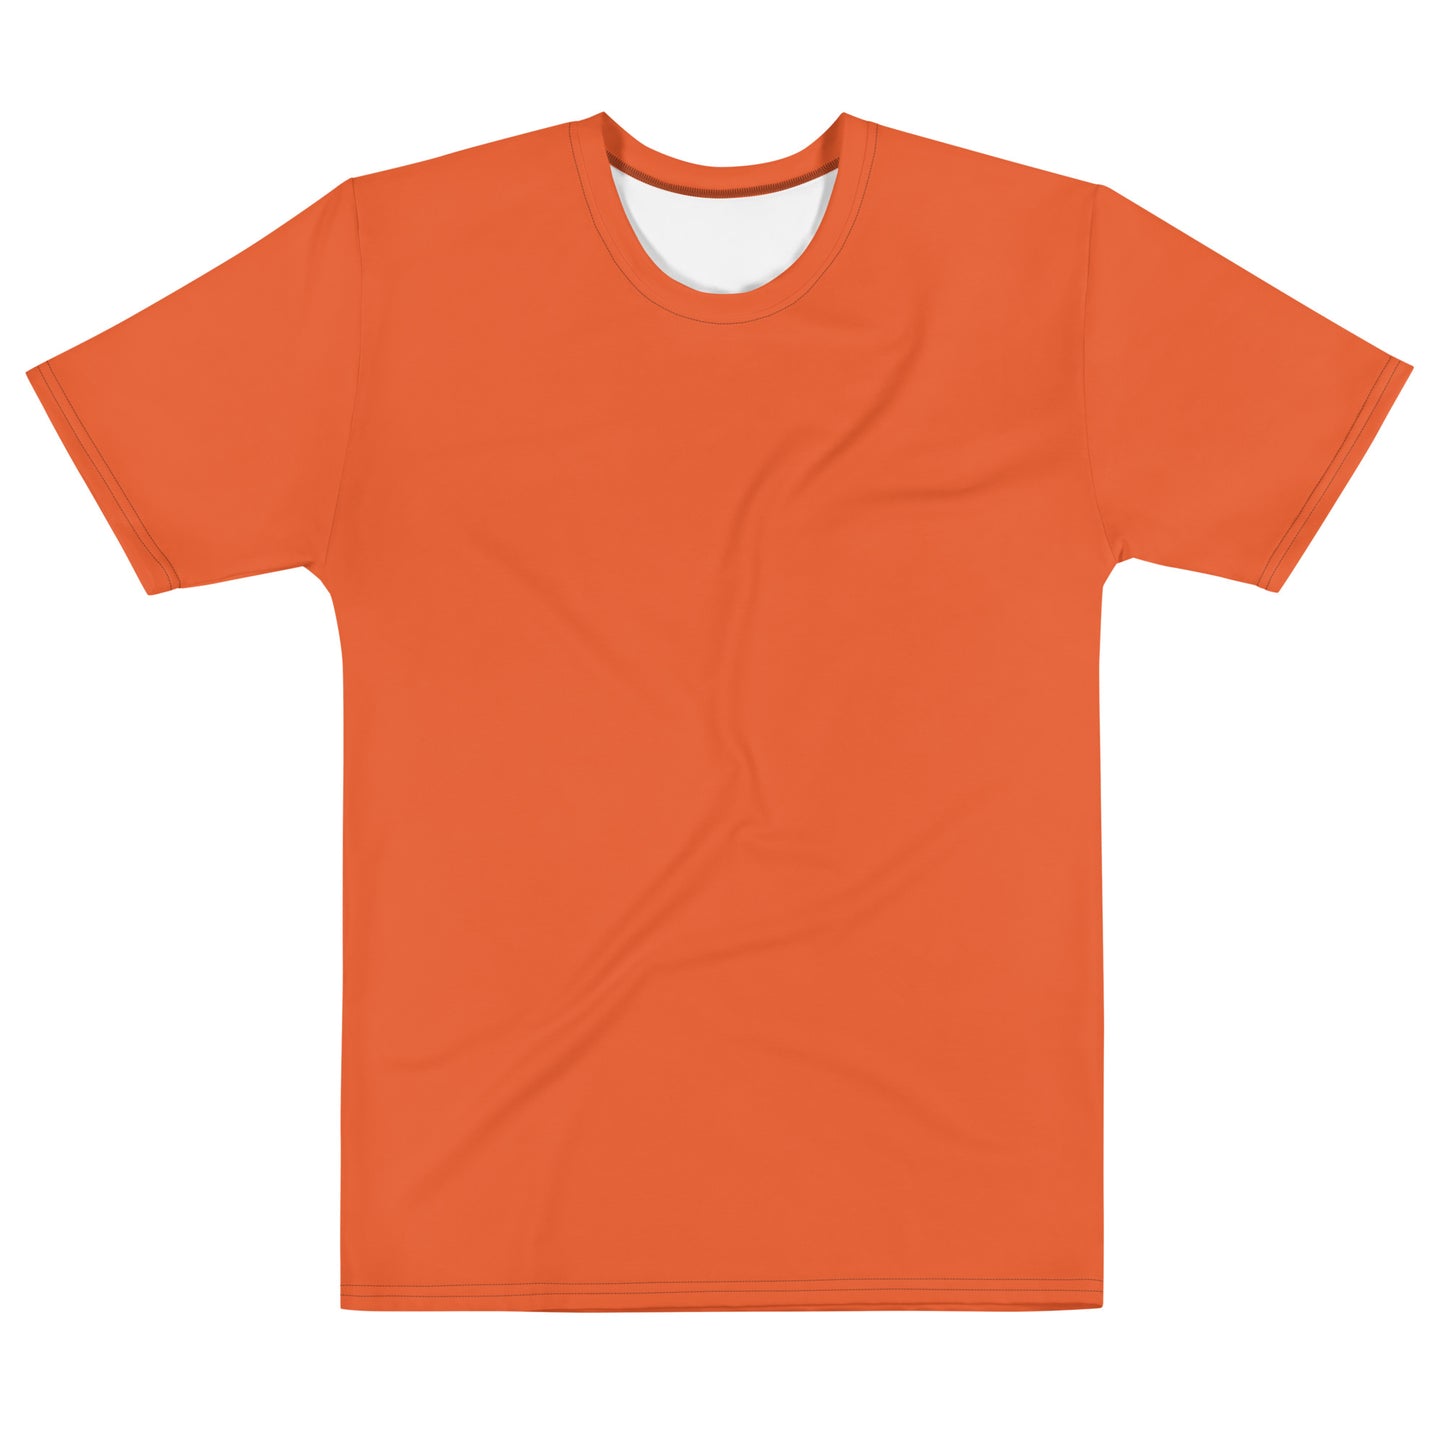 Basic Orange - Sustainably Made Men's Short Sleeve Tee